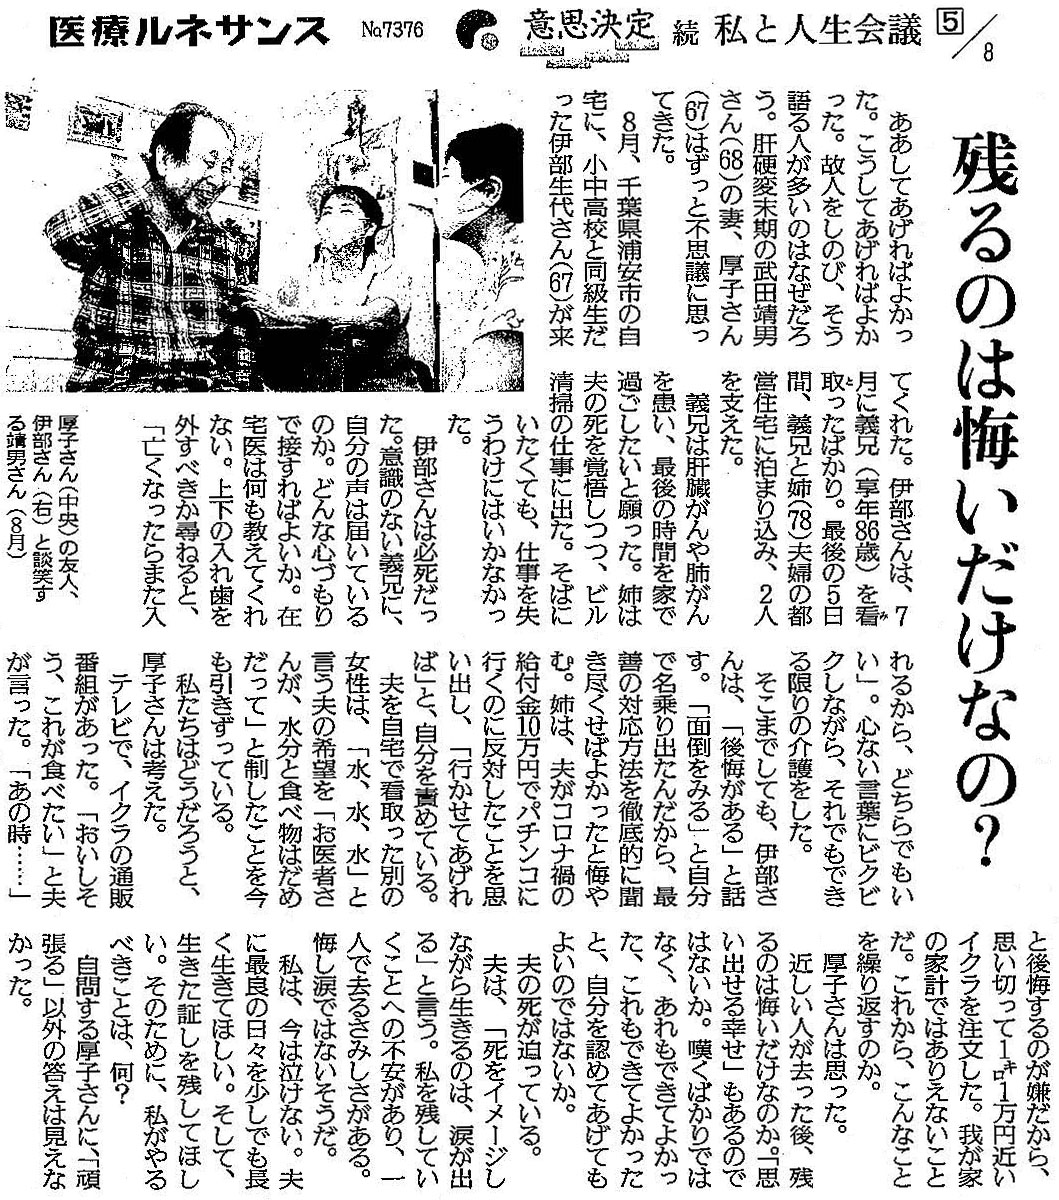 読売新聞 2020年9月29日掲載記事